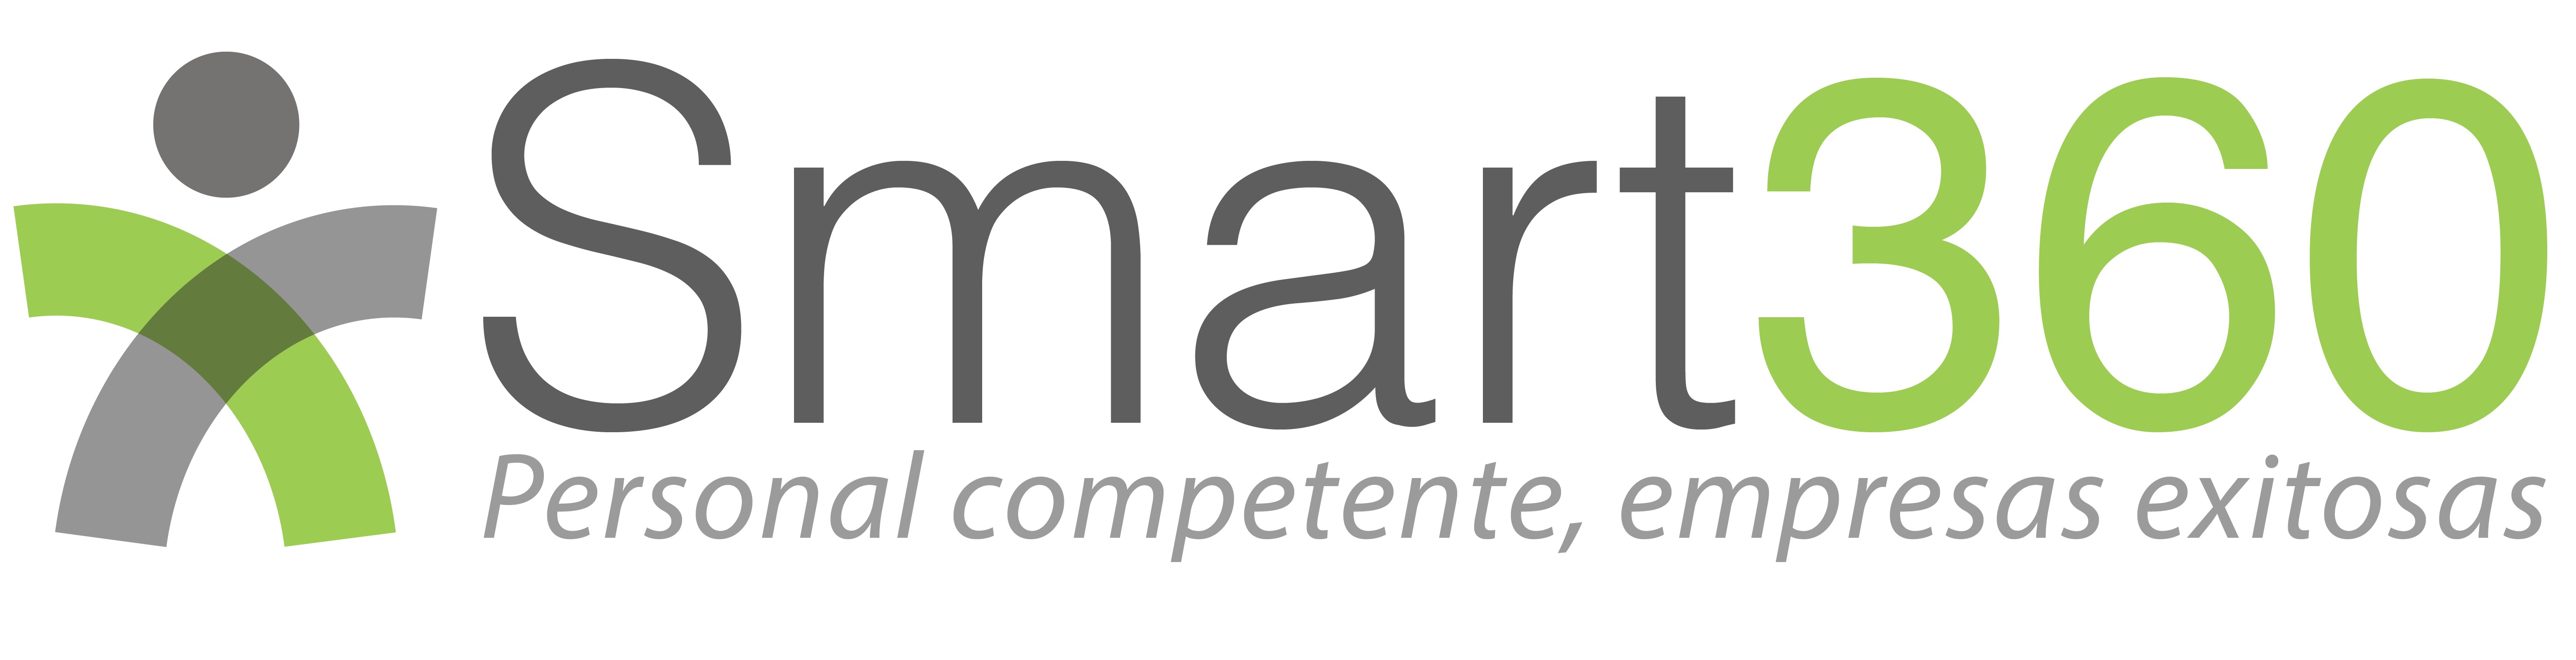 logo de smart 360, software de evaluación  